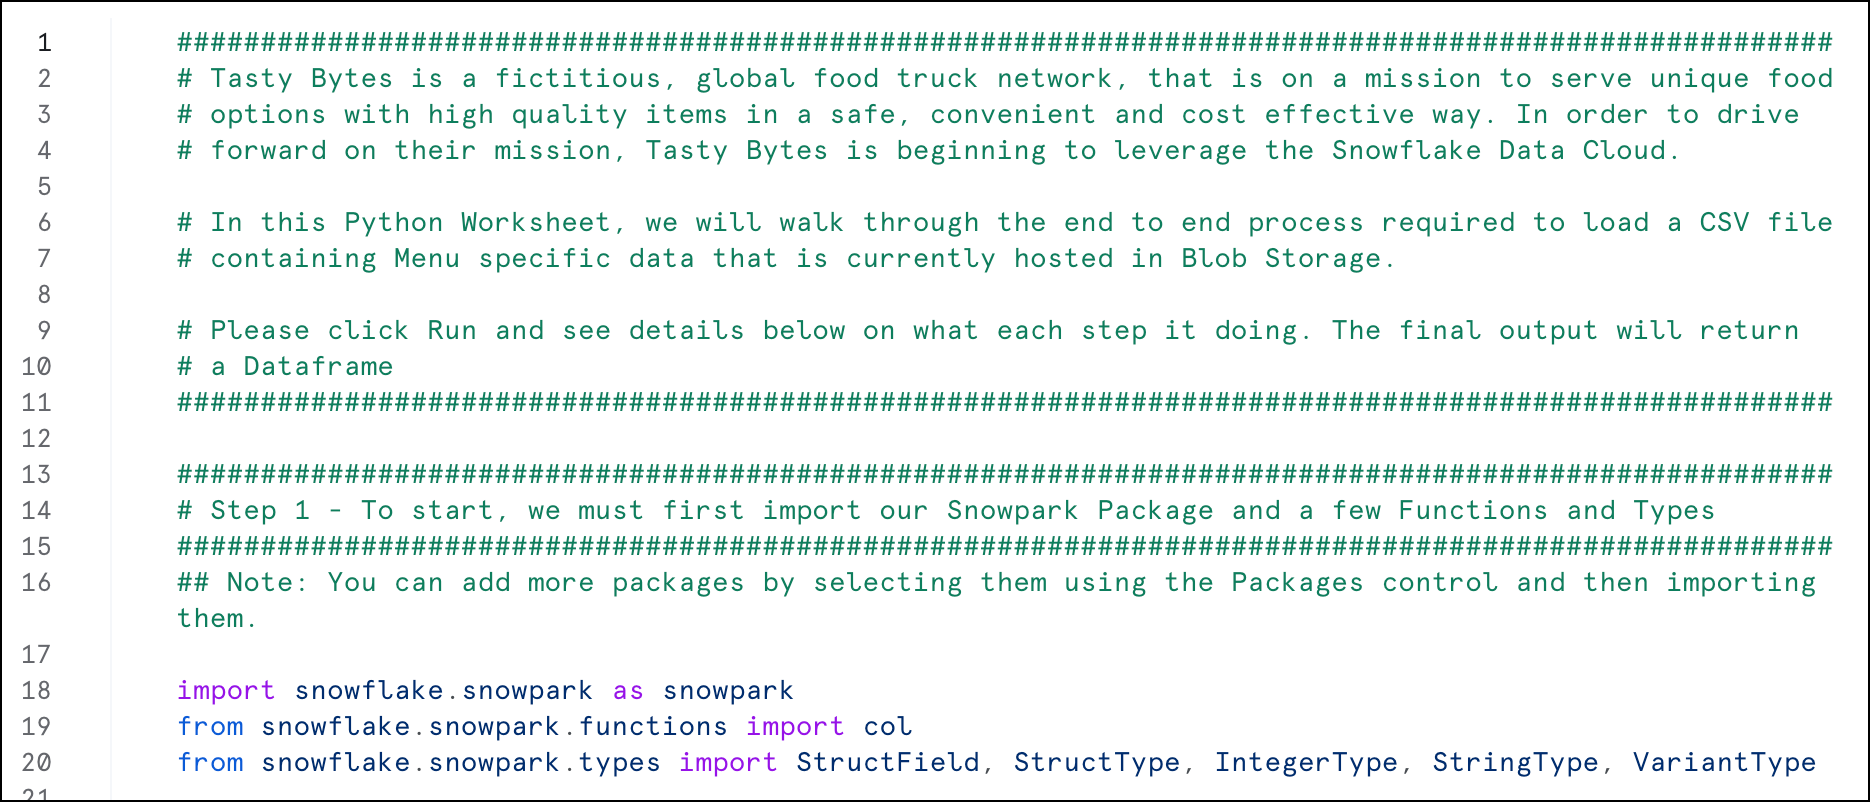 A planilha de carregamento e consulta do Python, que contém o código deste tutorial, juntamente com comentários descritivos.